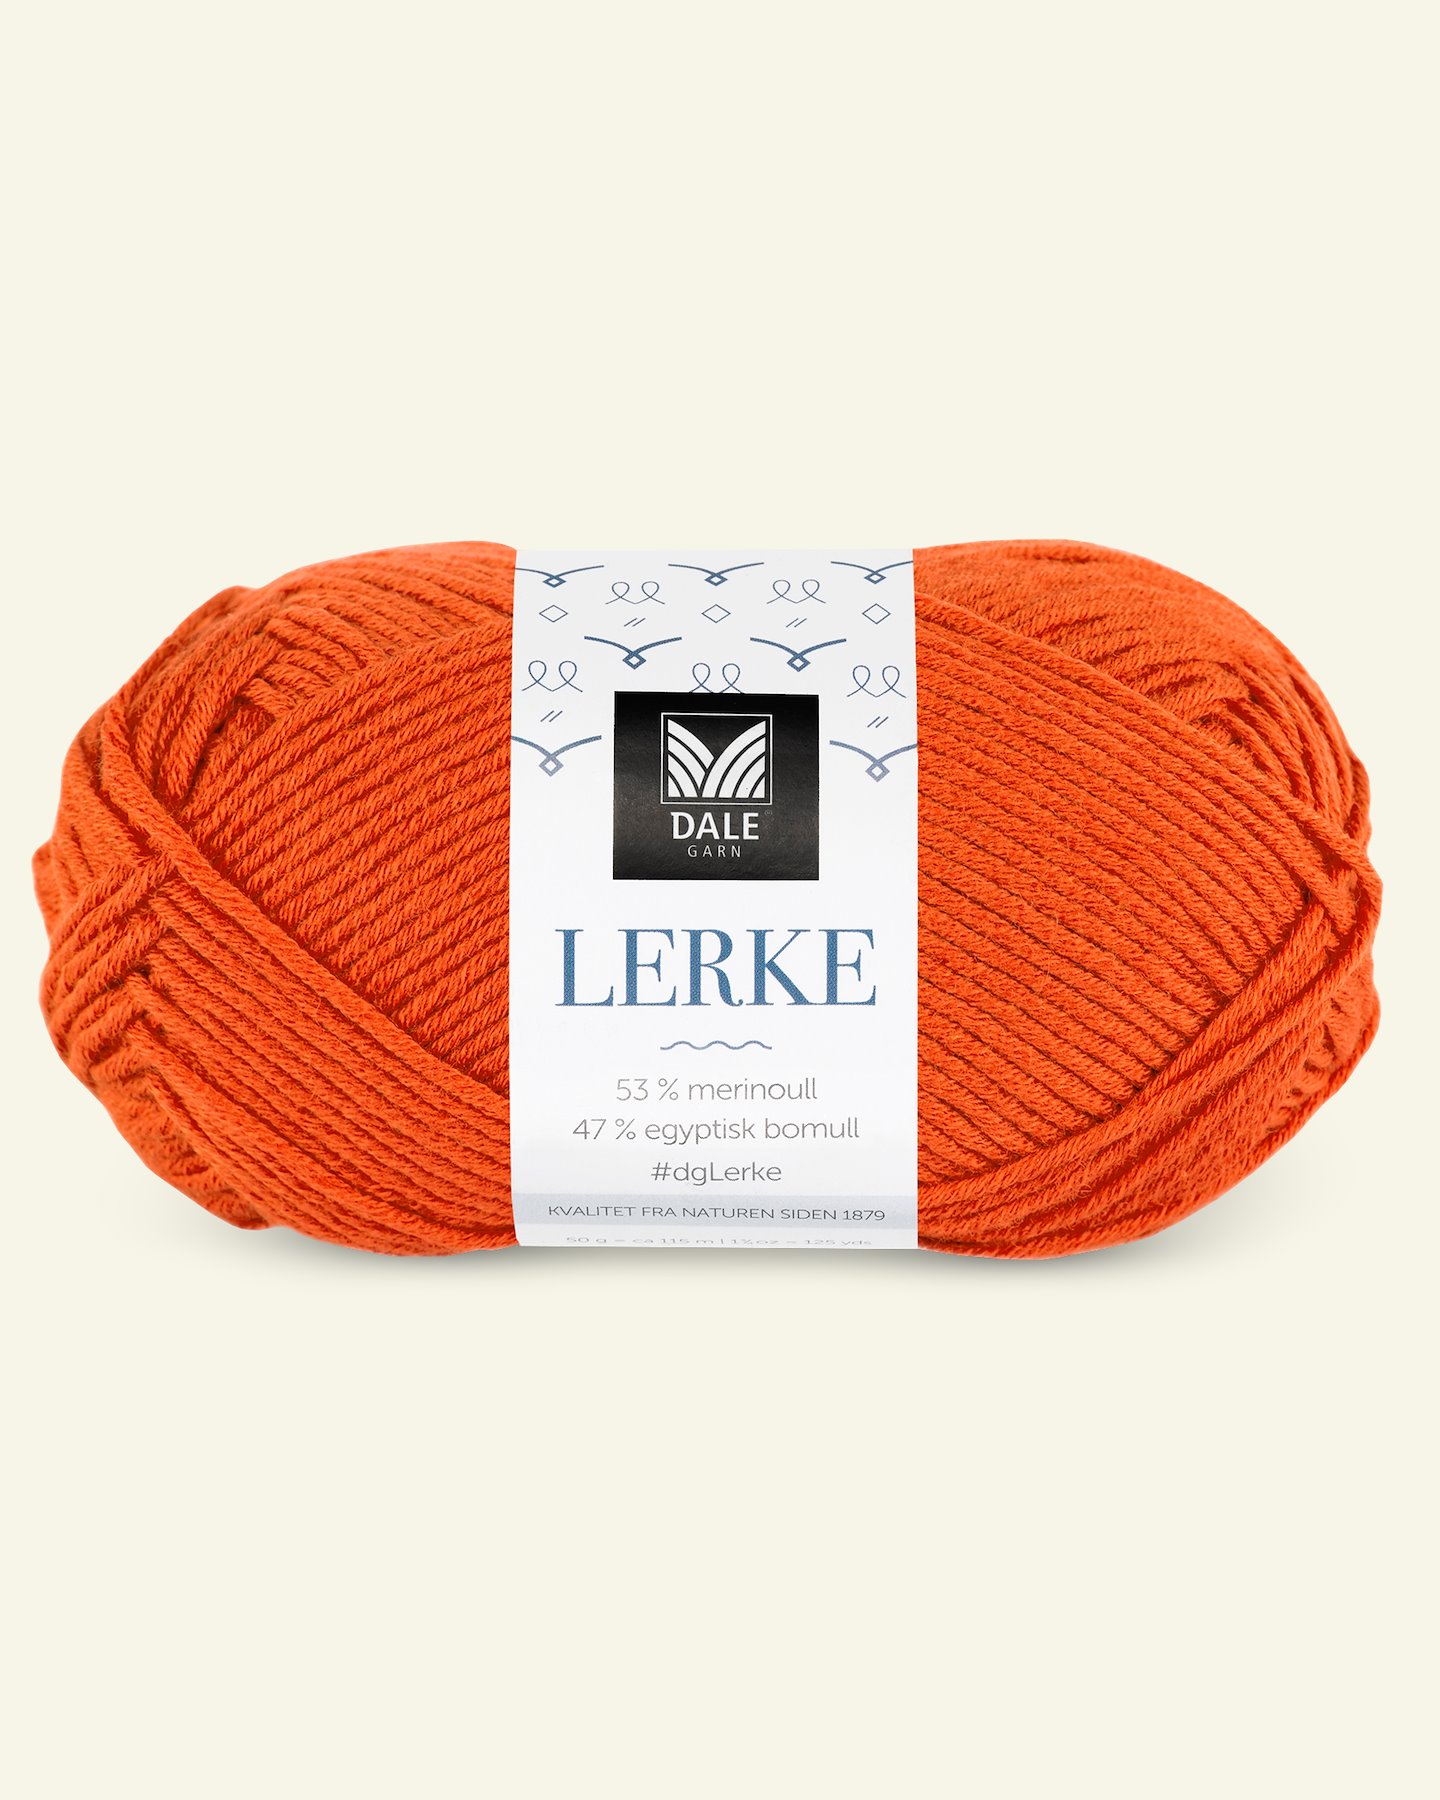 Dale Garn,merino bomullsgarn "Lerke", orange (8165) 90000864_pack